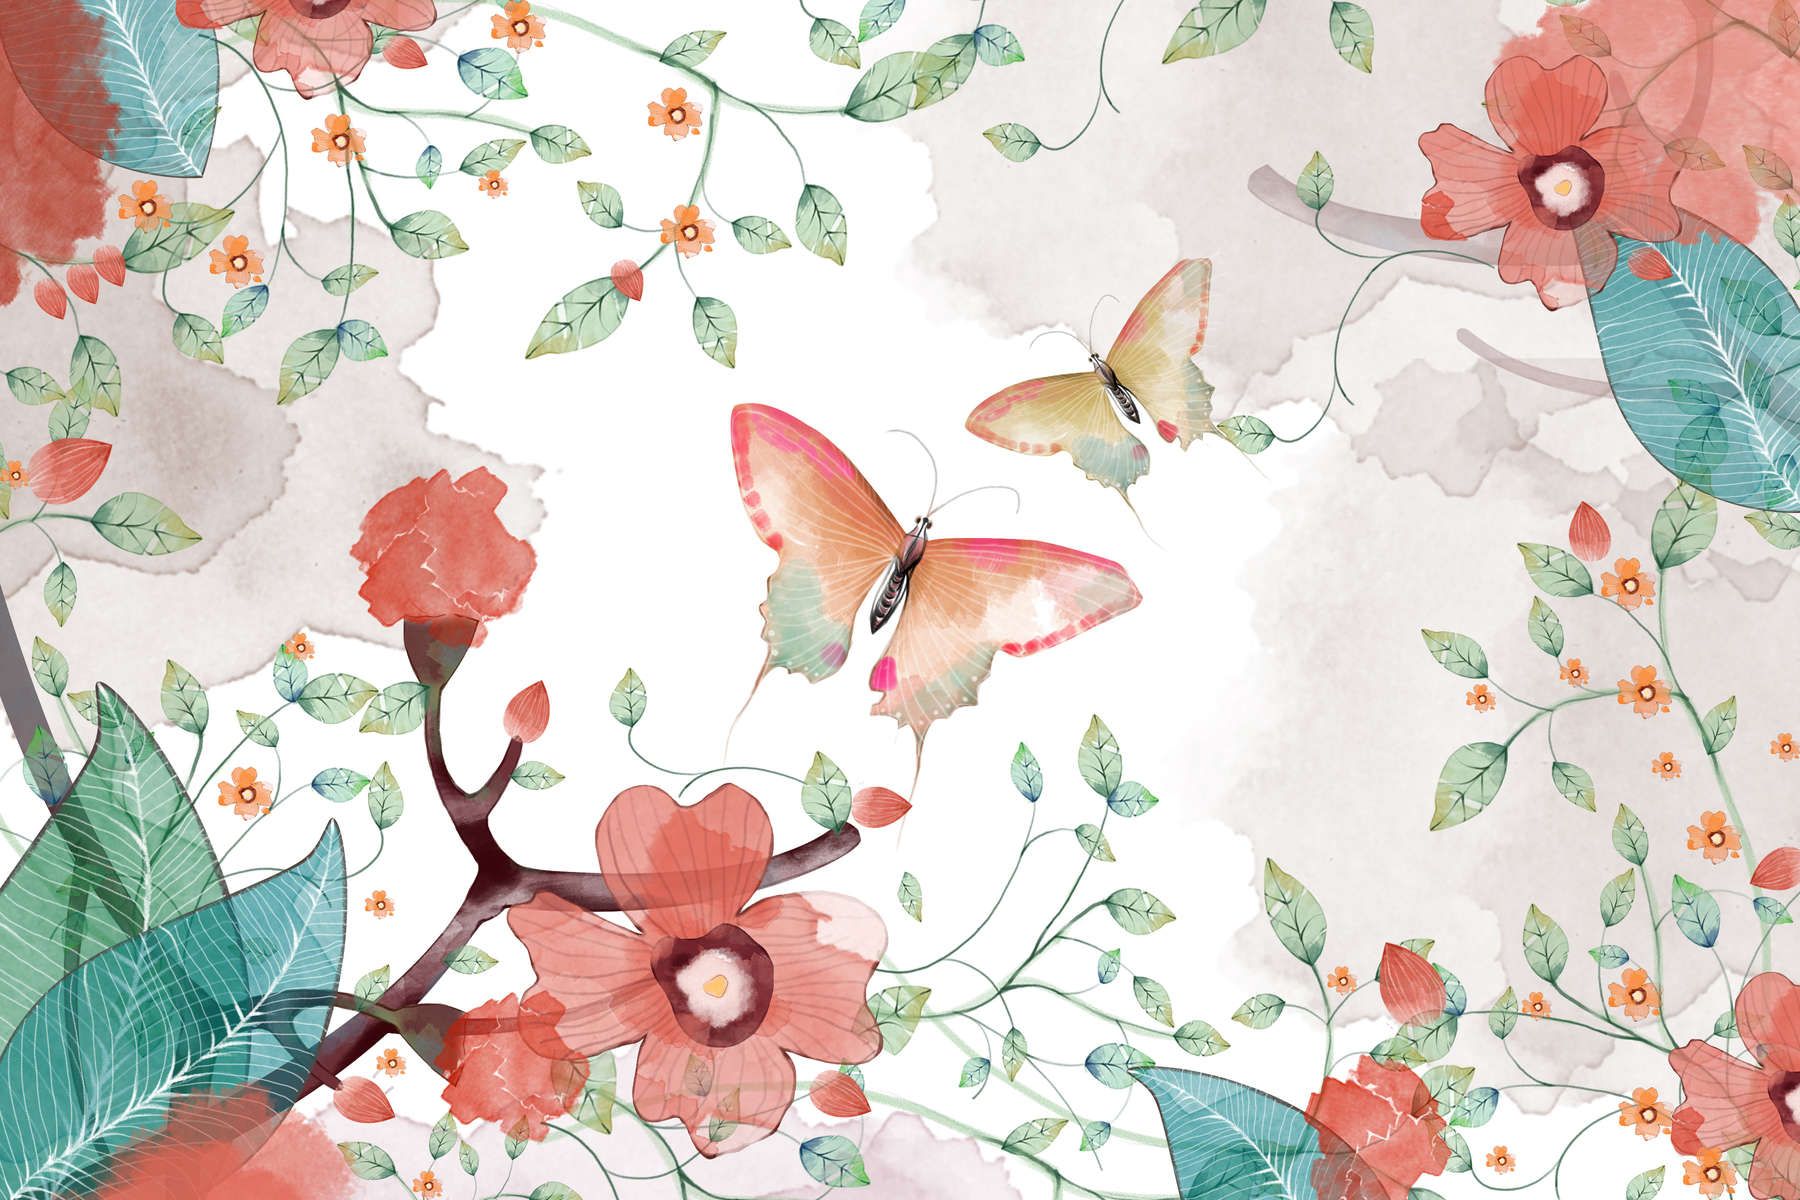             Digital behang bloemen met bladeren en vlinders - Glad & parelmoervlies
        